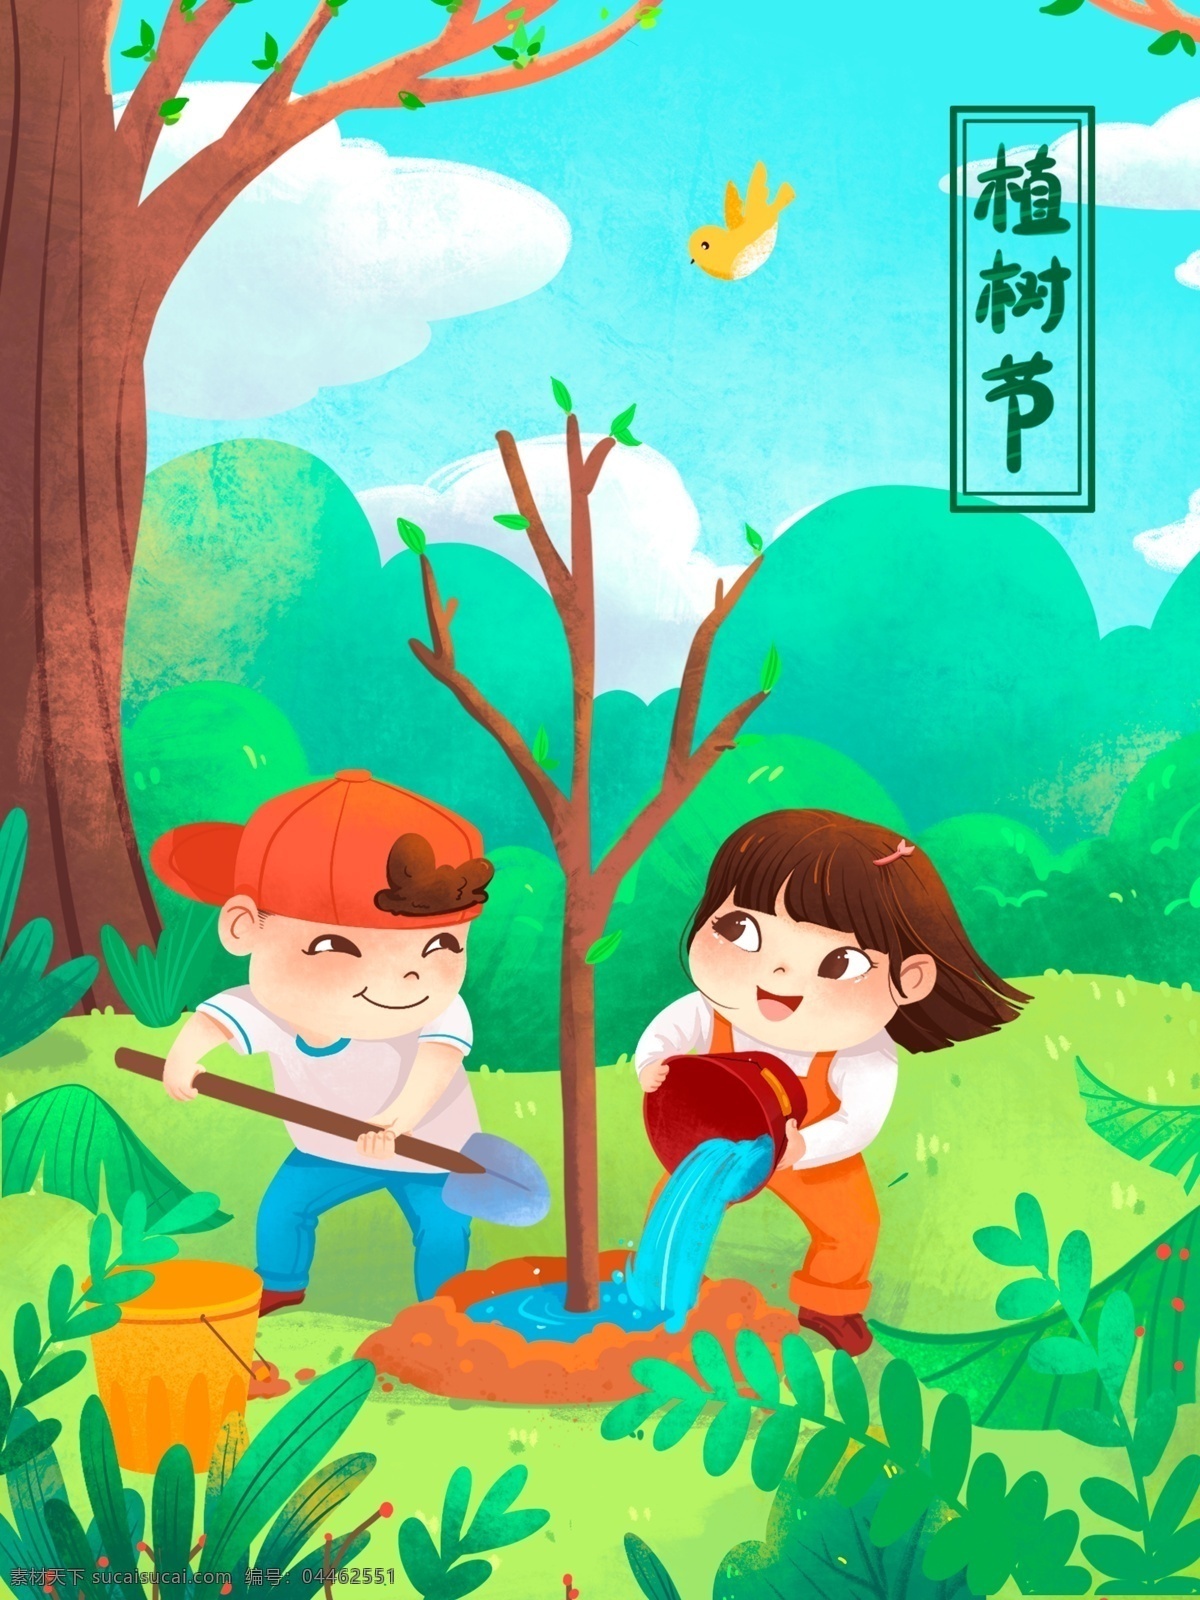 种树 环保 植树节 插画 绿色 大树 草坪 俩个人 小孩 肌理 海报